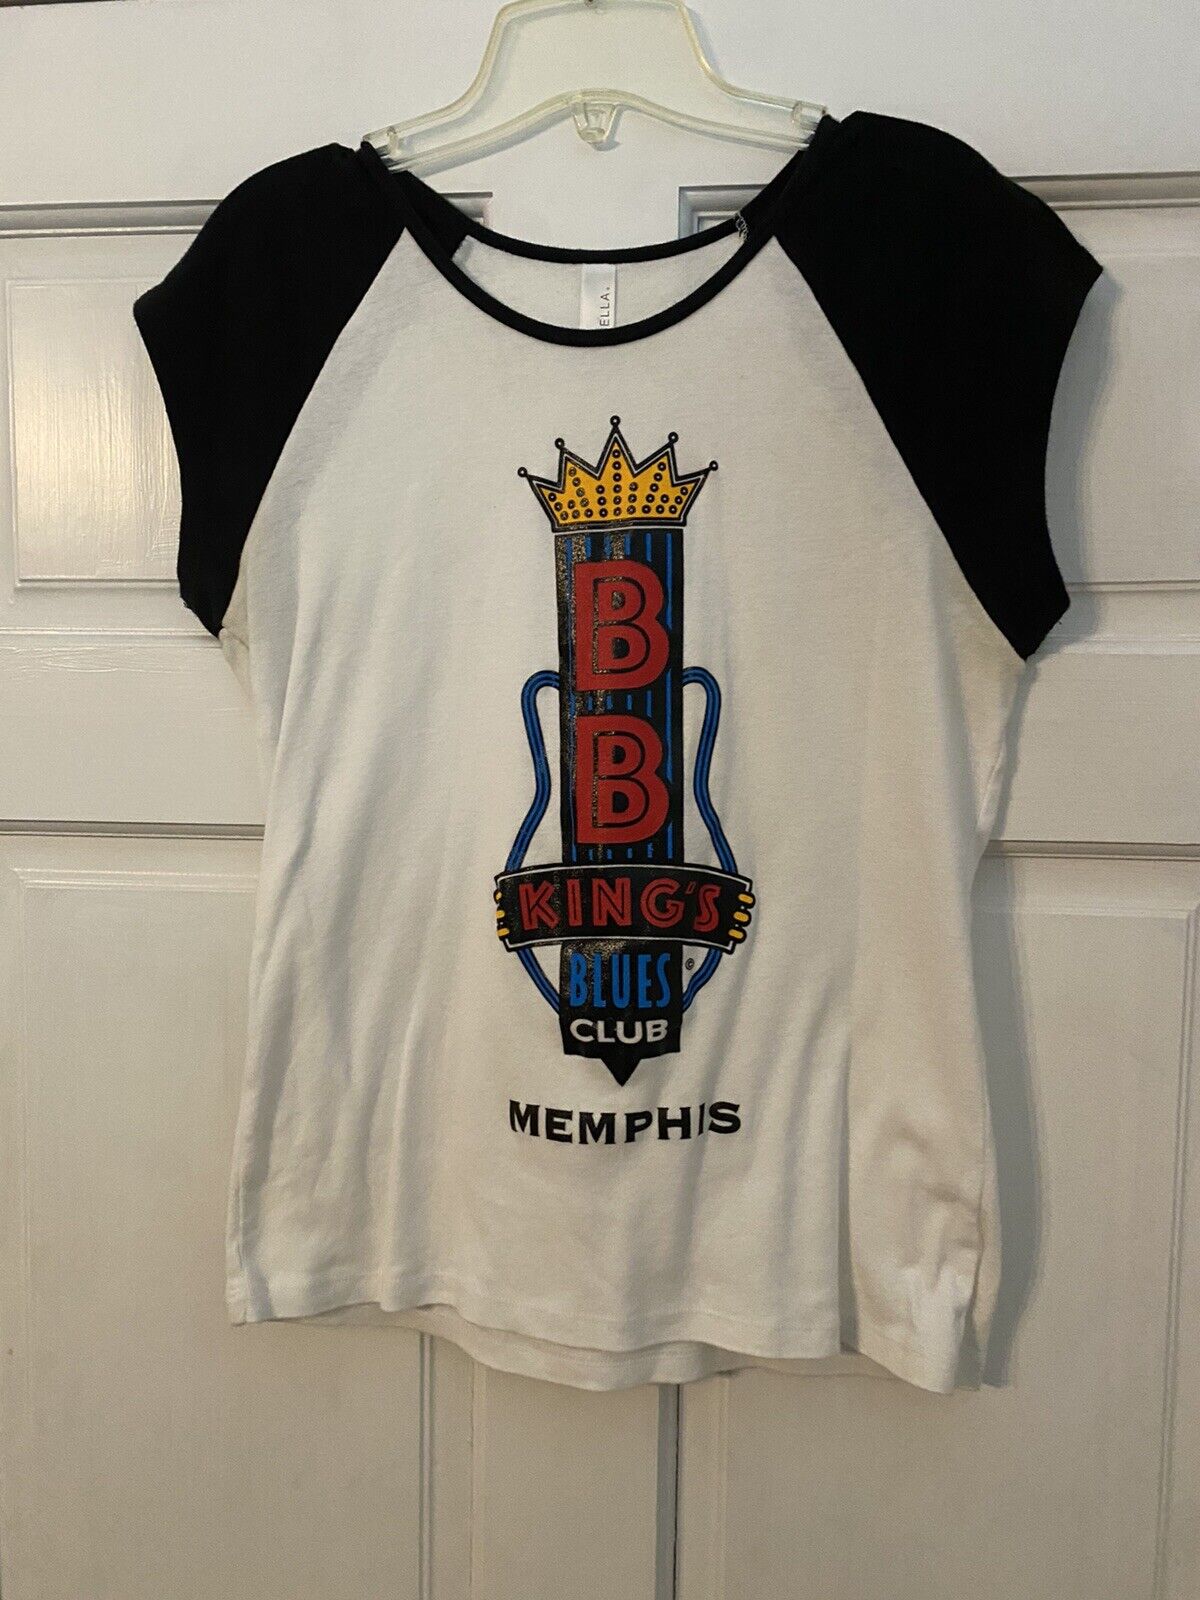 Girl’s Youth B.b. King’s Blues Club Shirt, Xl, White, Cotton